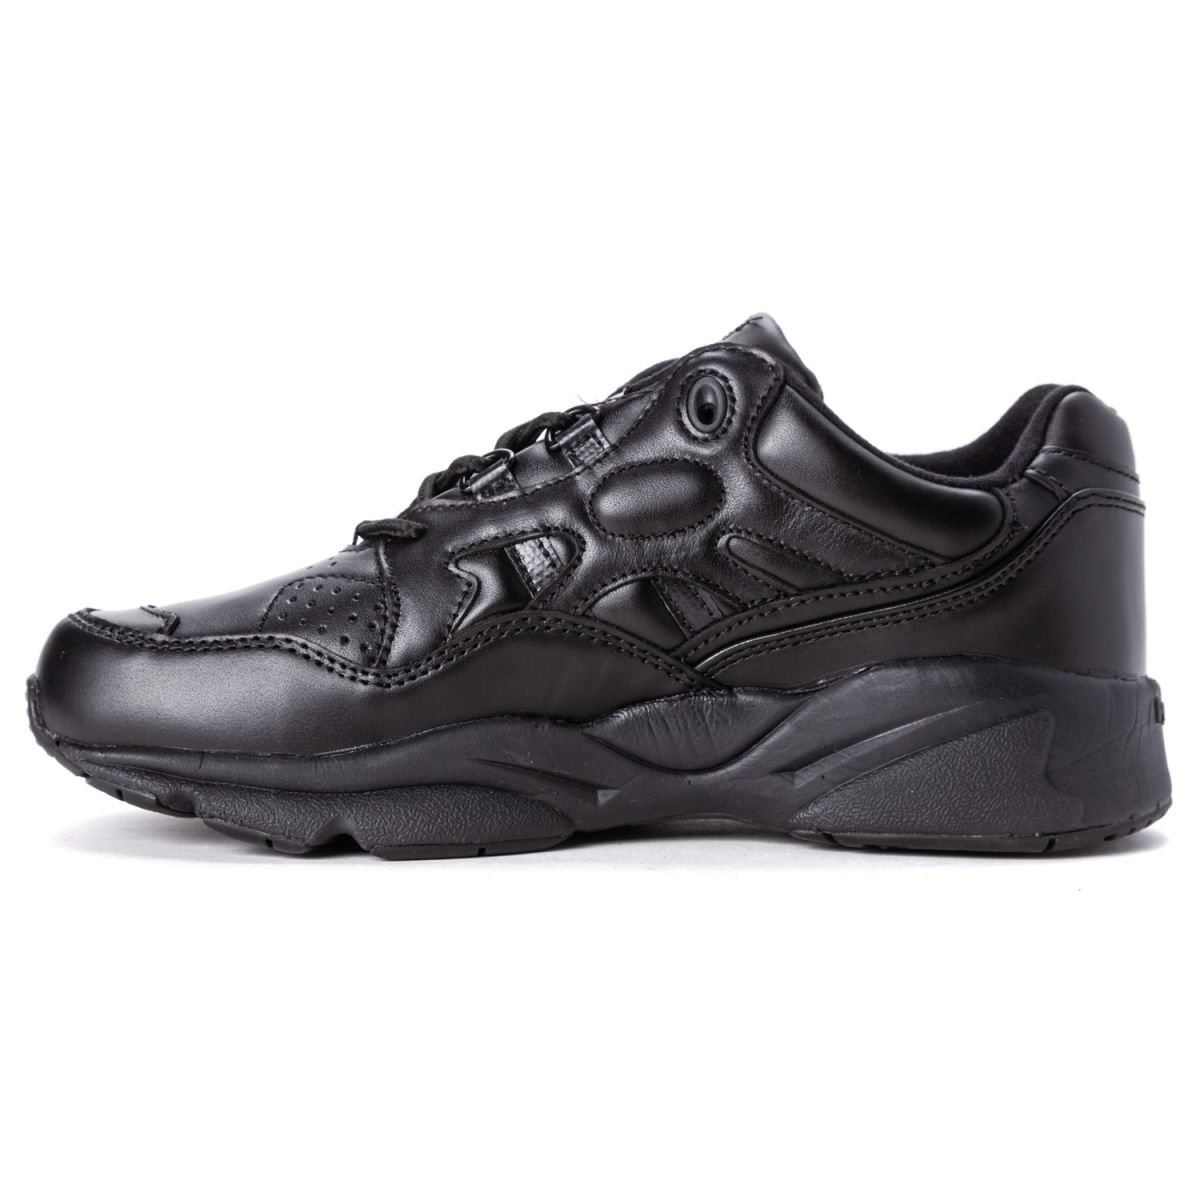 Propet Women's Stability Walker Sneaker Black - W2034BLK BLACK - BLACK, 10 W (US Women's 10 D)